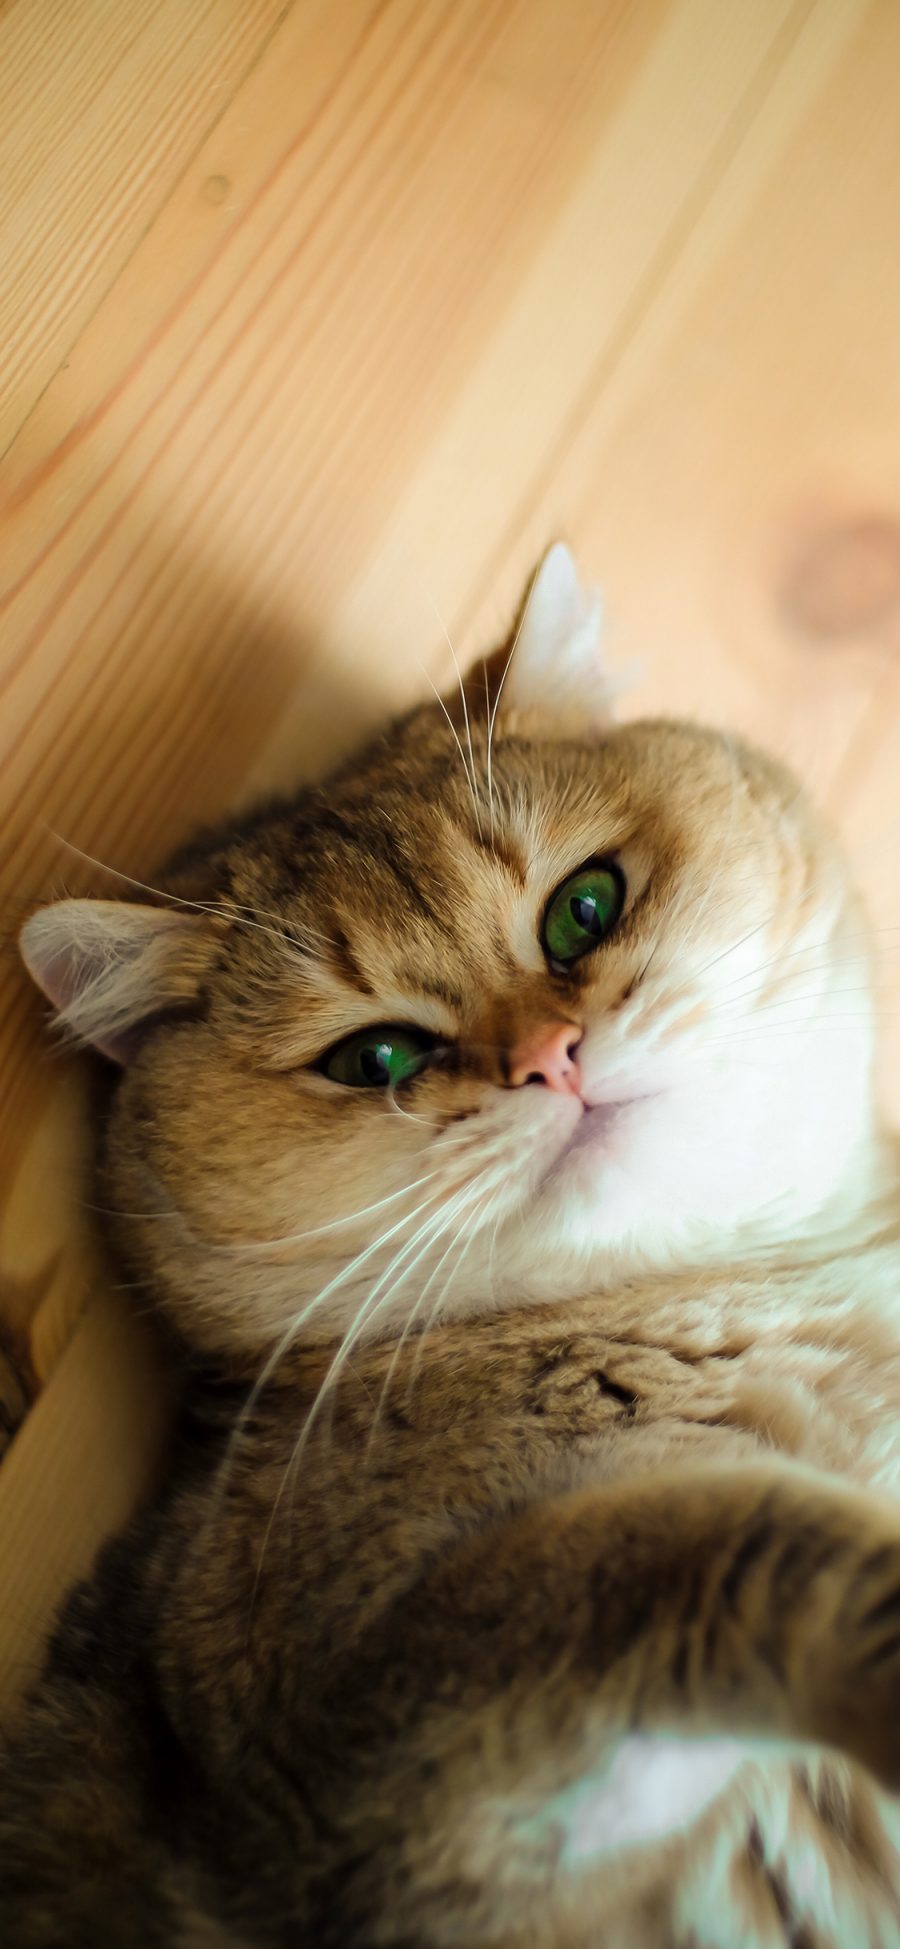 [2436×1125]猫咪 喵星人 宠物 可爱 萌 慵懒 苹果手机壁纸图片